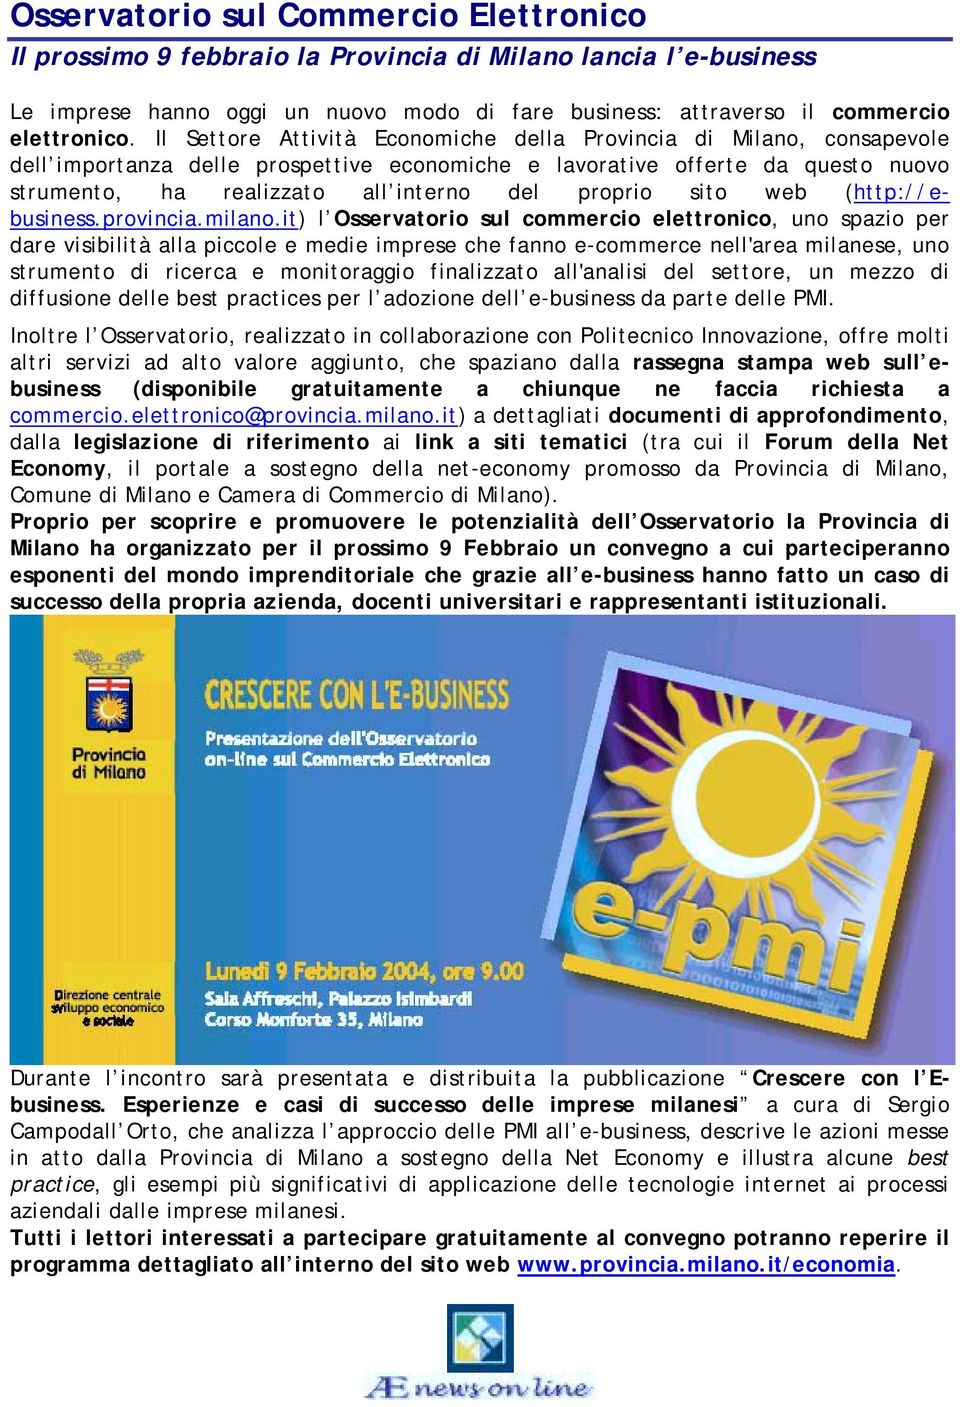 proprio sito web (http://ebusiness.provincia.milano.